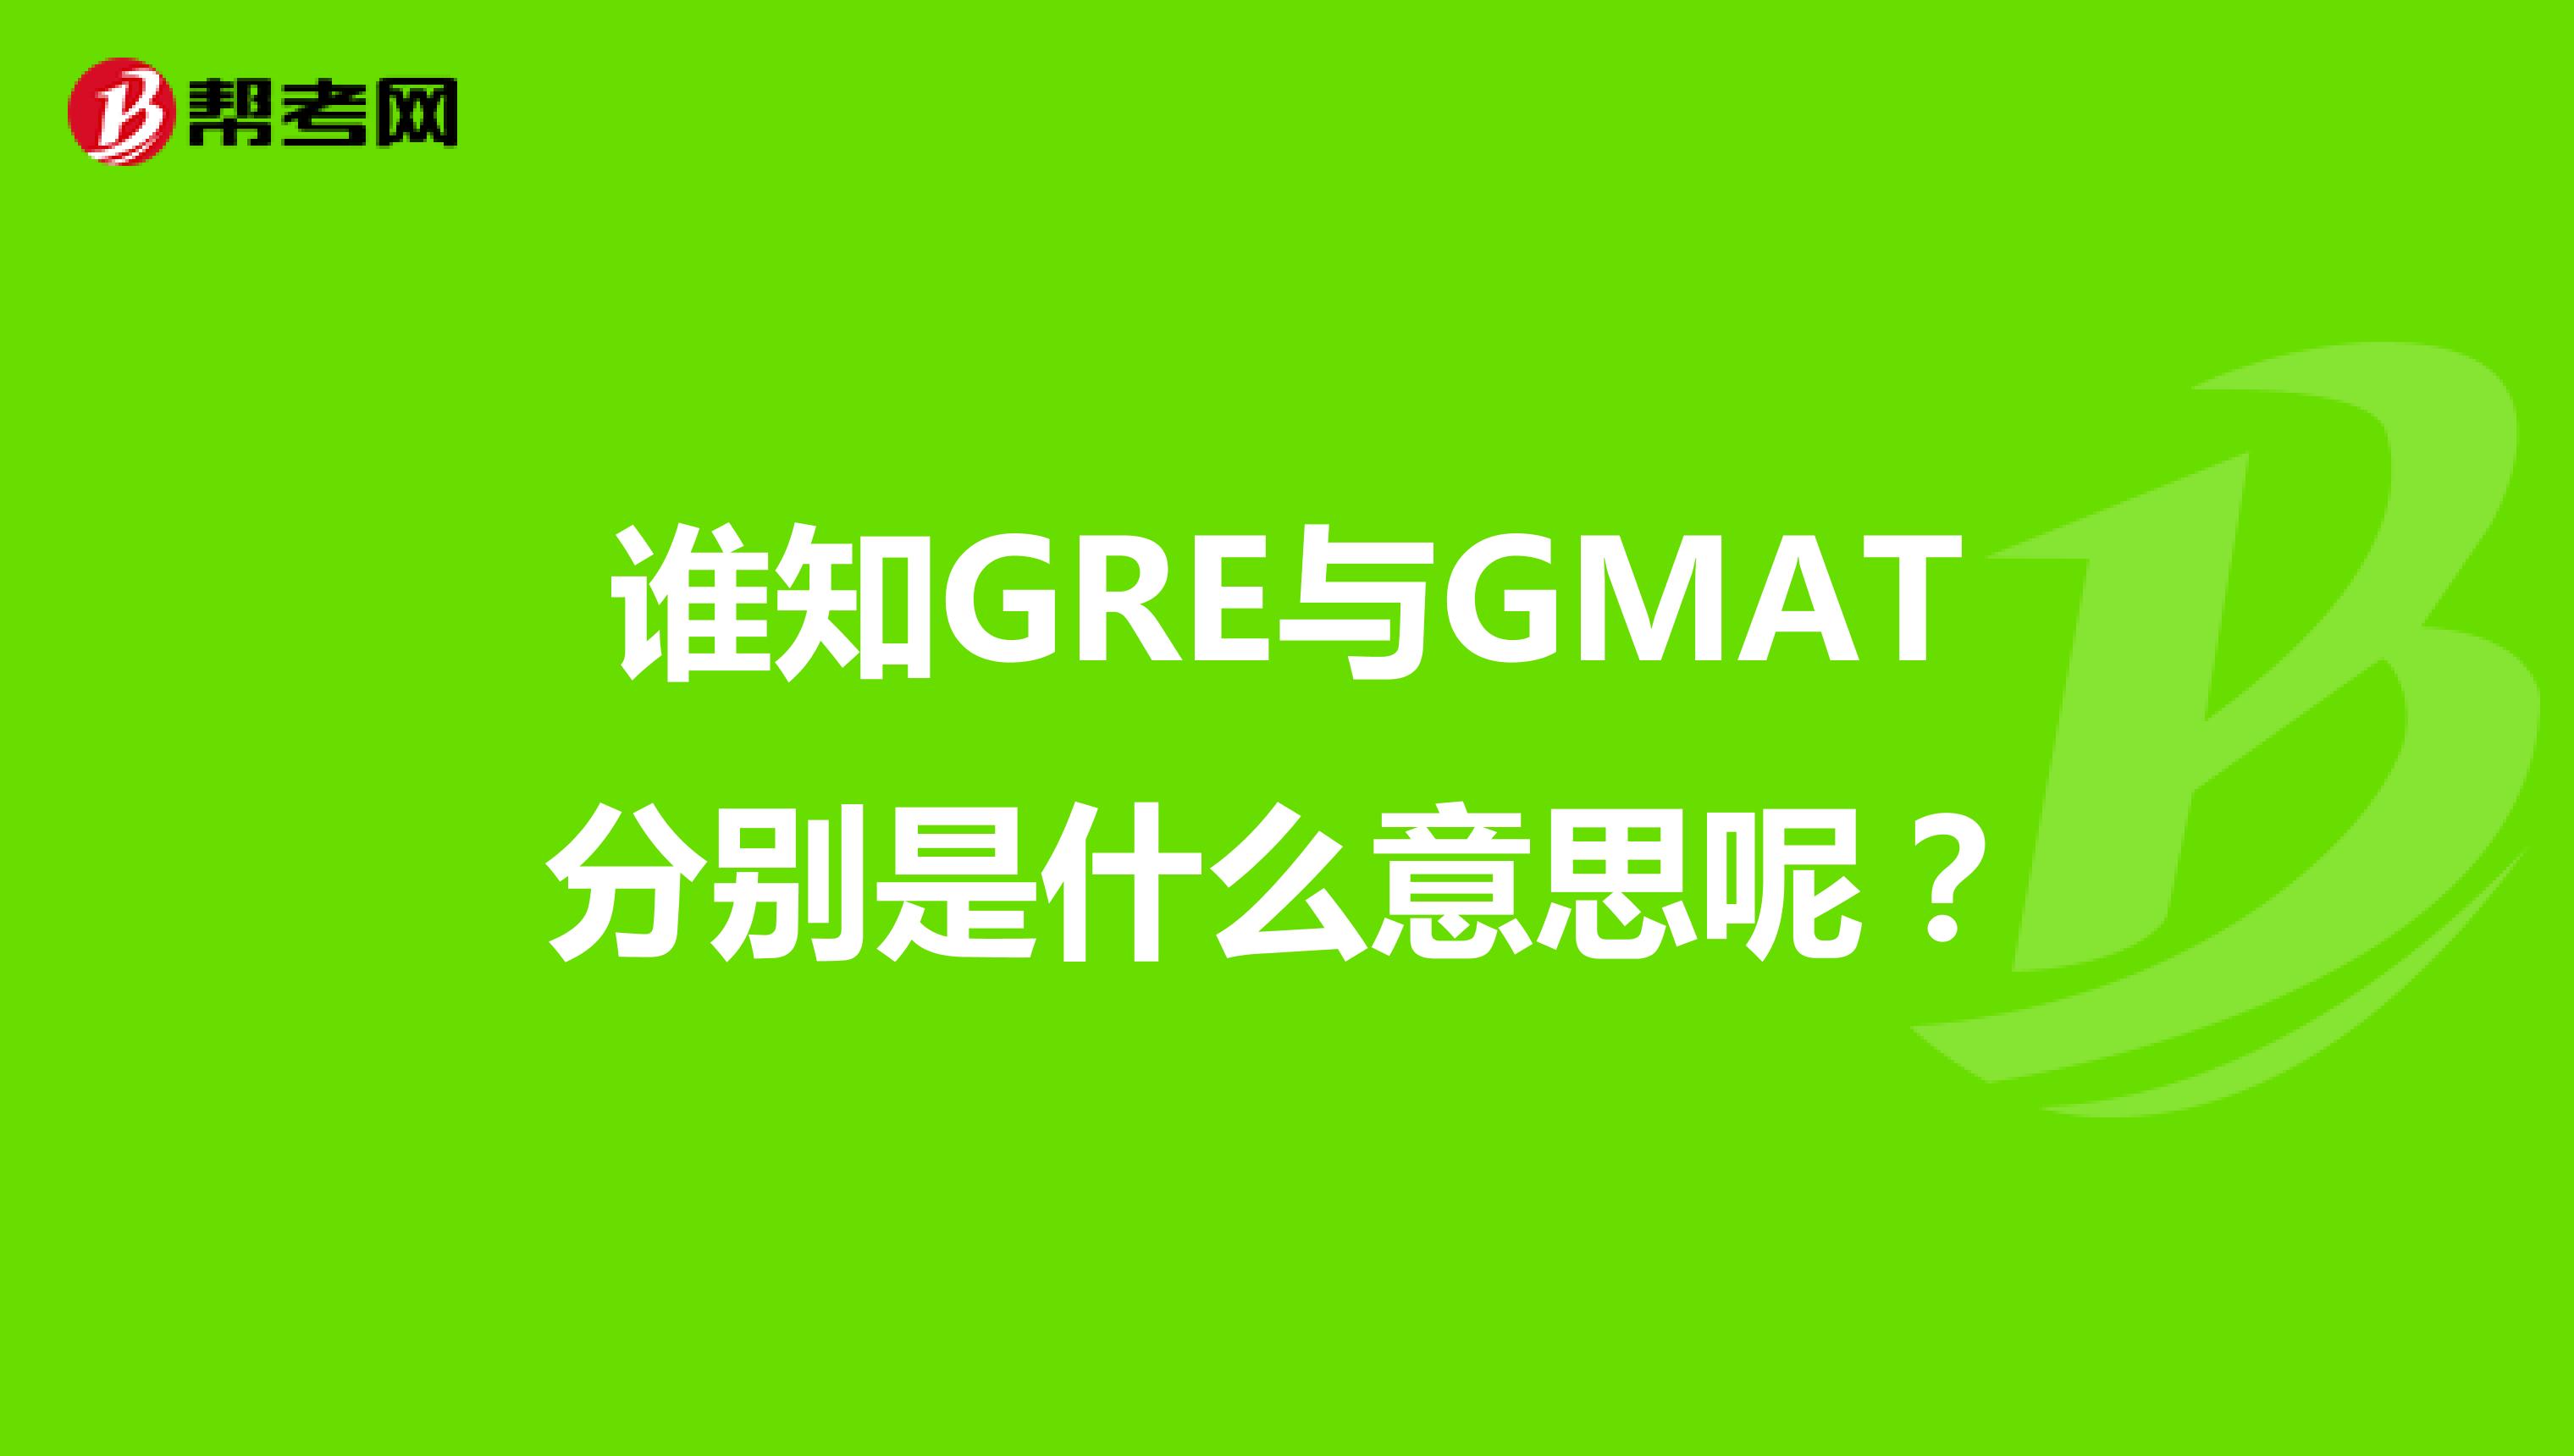 谁知GRE与GMAT分别是什么意思呢？